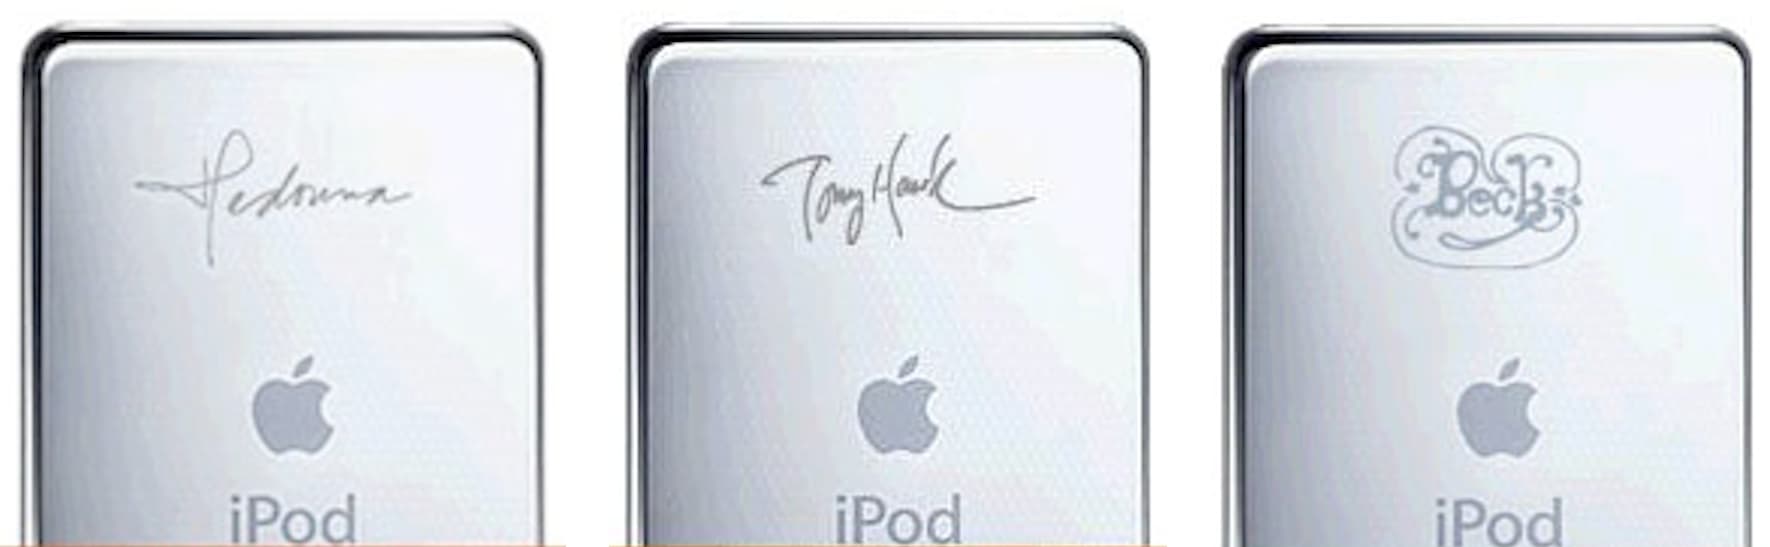 iPod с автографами Мадонны, Тони Хоука, Бека и No Doubt